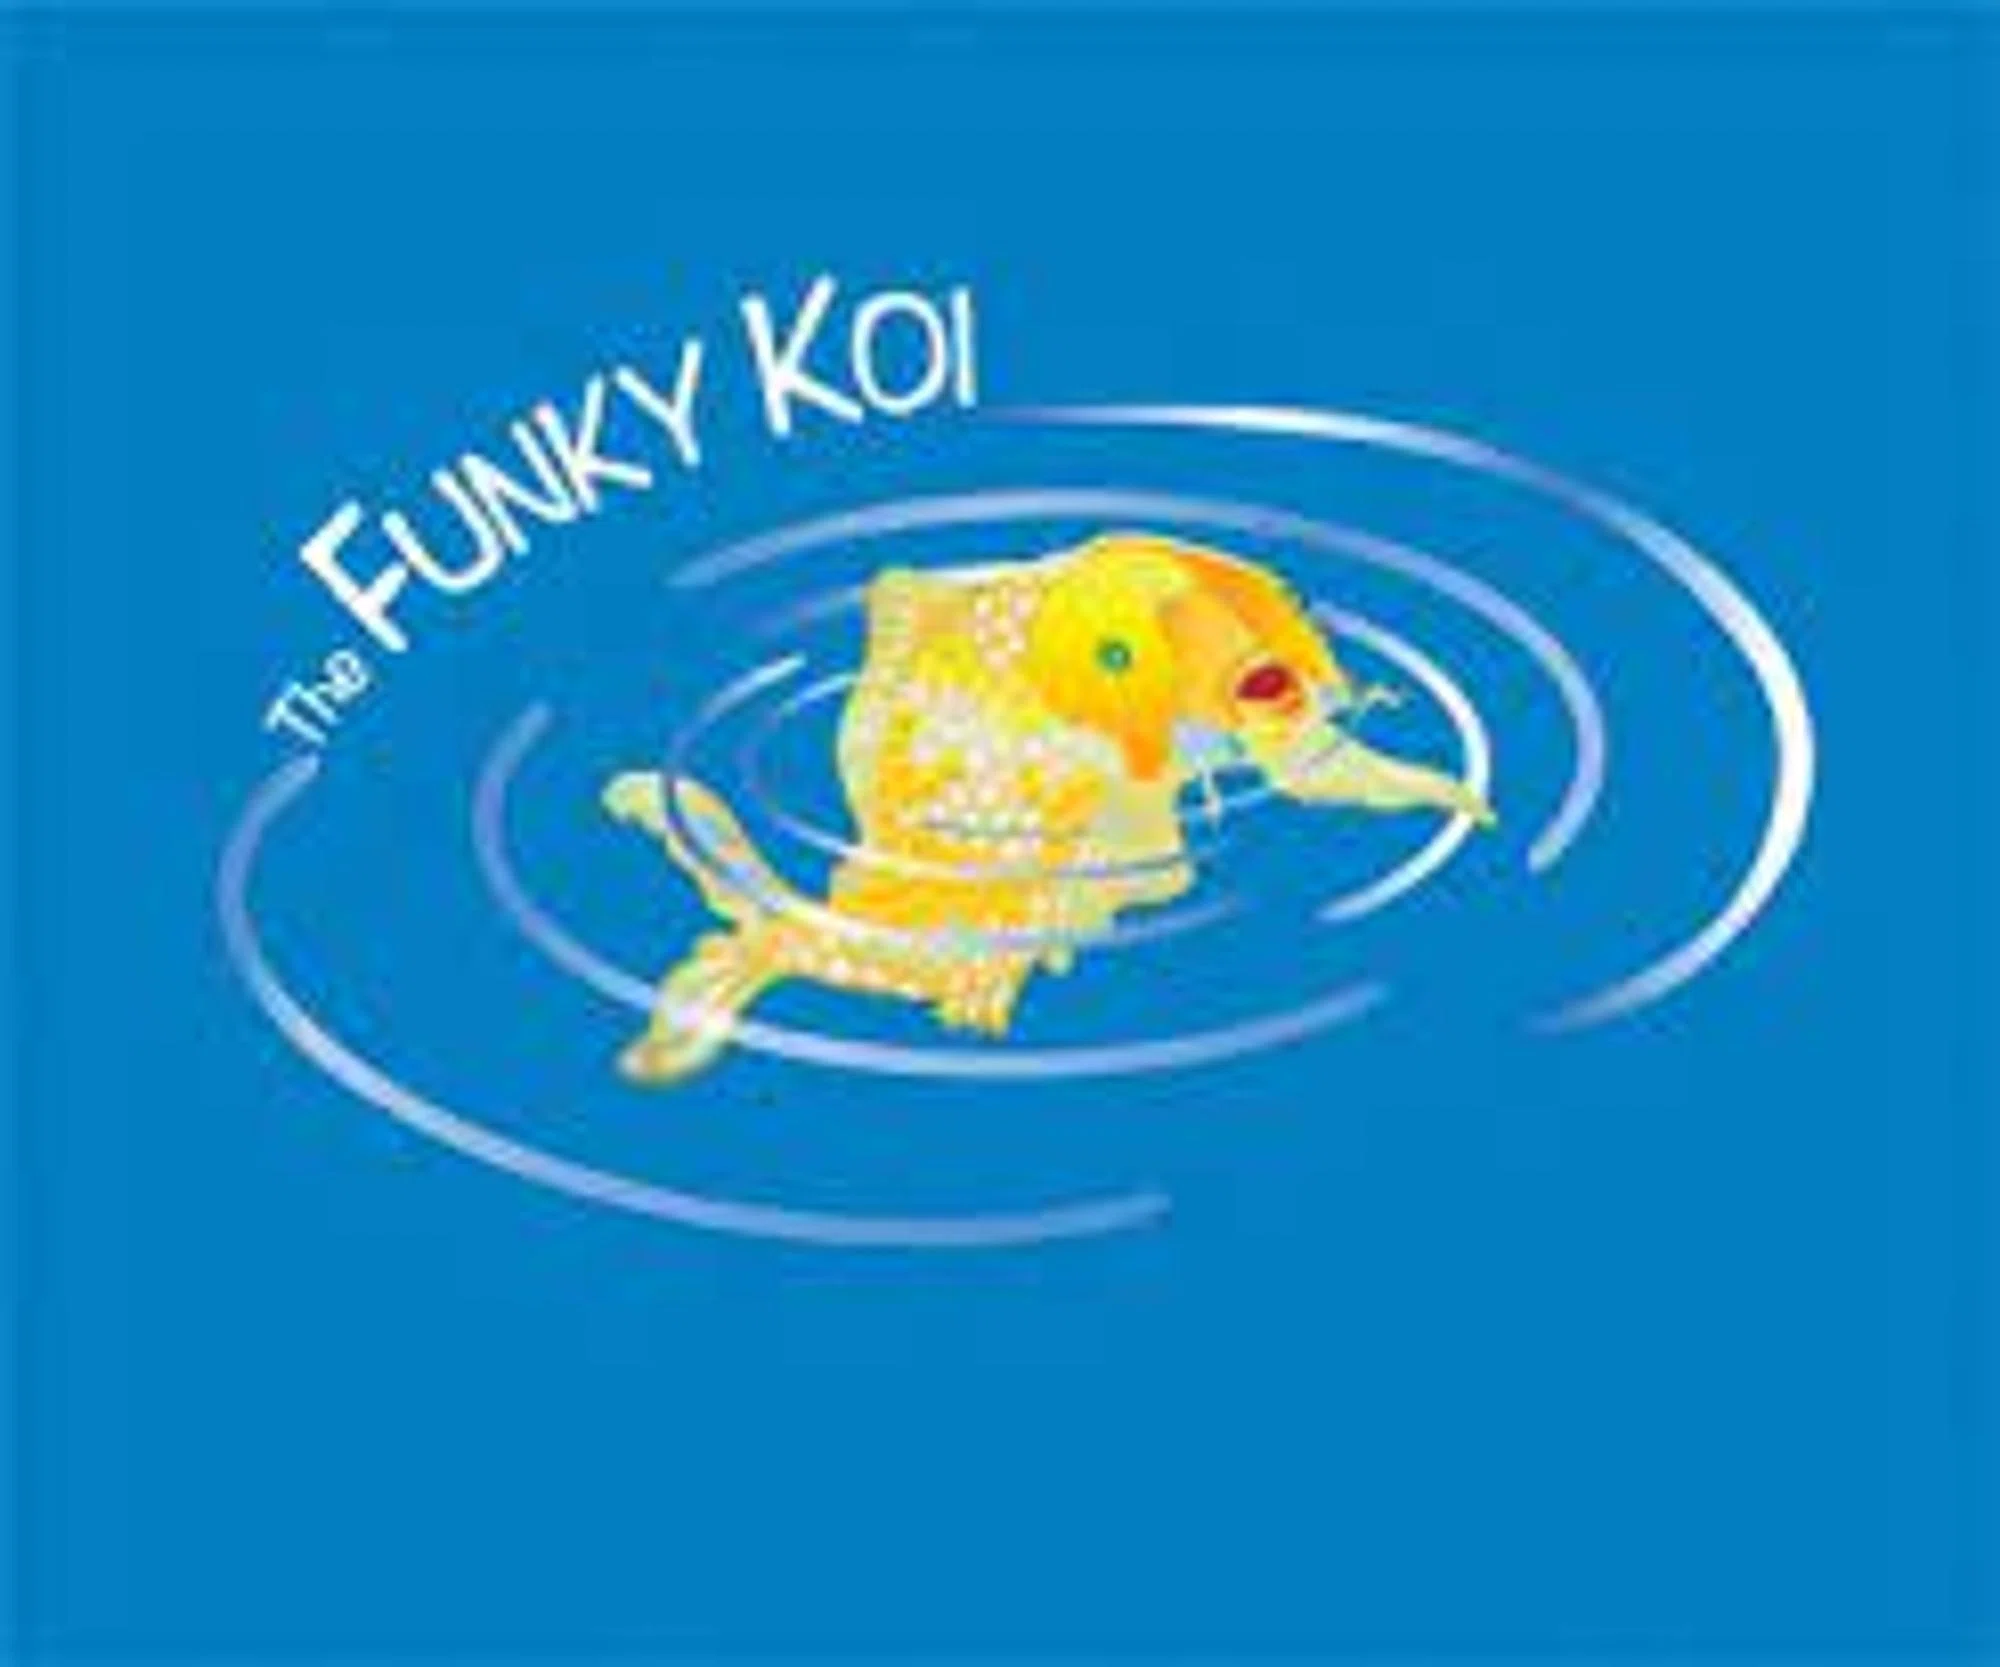 The Funky Koi